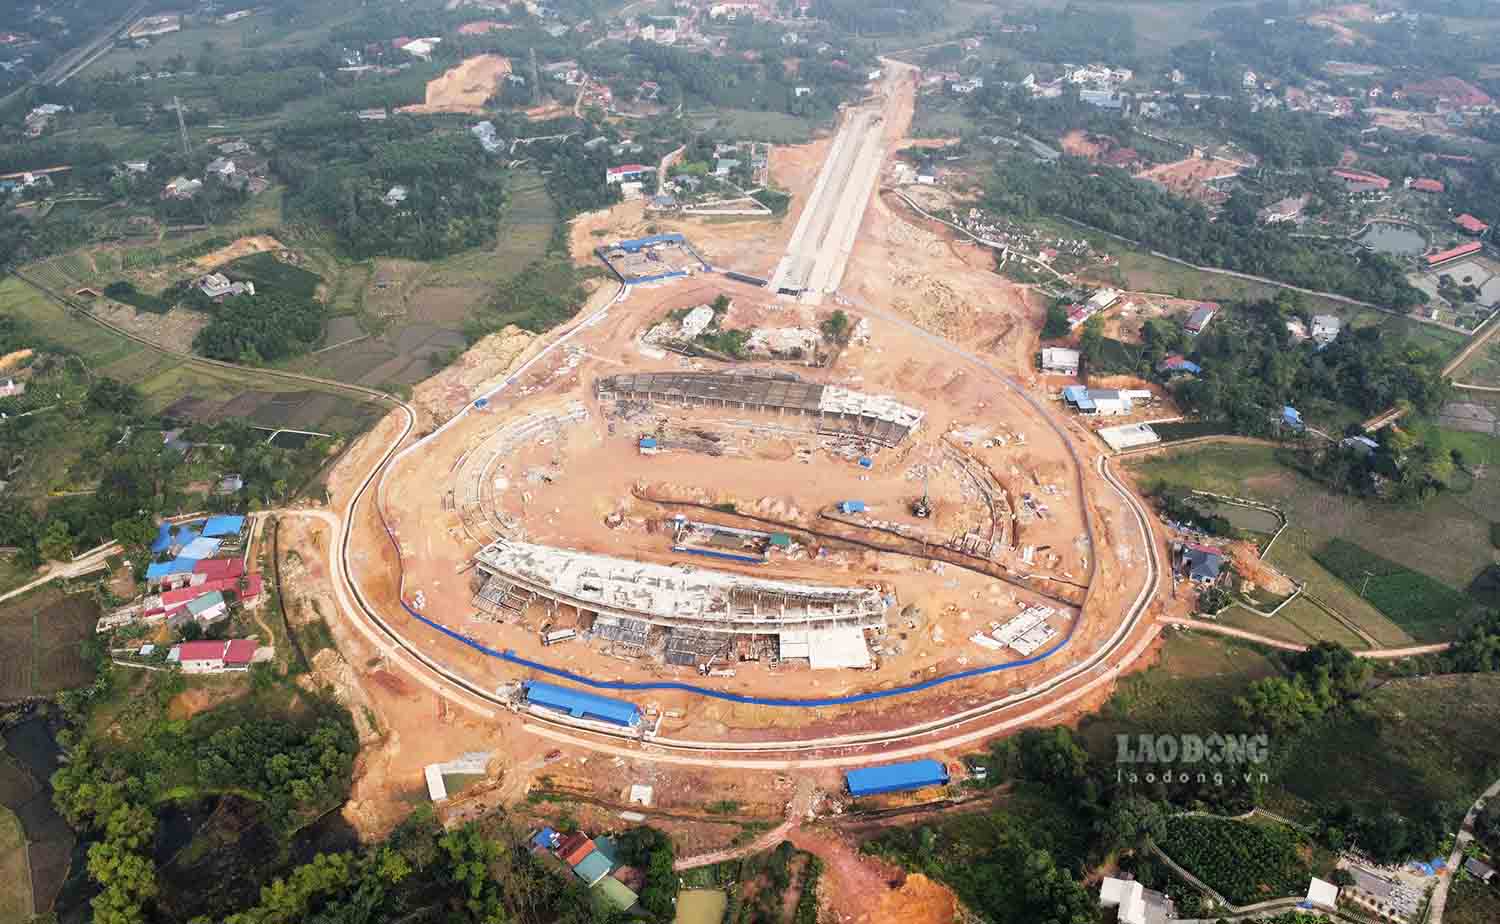 Dự án sân vận động tỉnh Thái Nguyên được xây dựng tại xã Phúc Trìu (TP Thái Nguyên) trên diện tích gần 14 ha do Ban Quản lý Dự án đầu tư xây dựng các công trình dân dụng và công nghiệp Thái Nguyên làm chủ đầu tư.